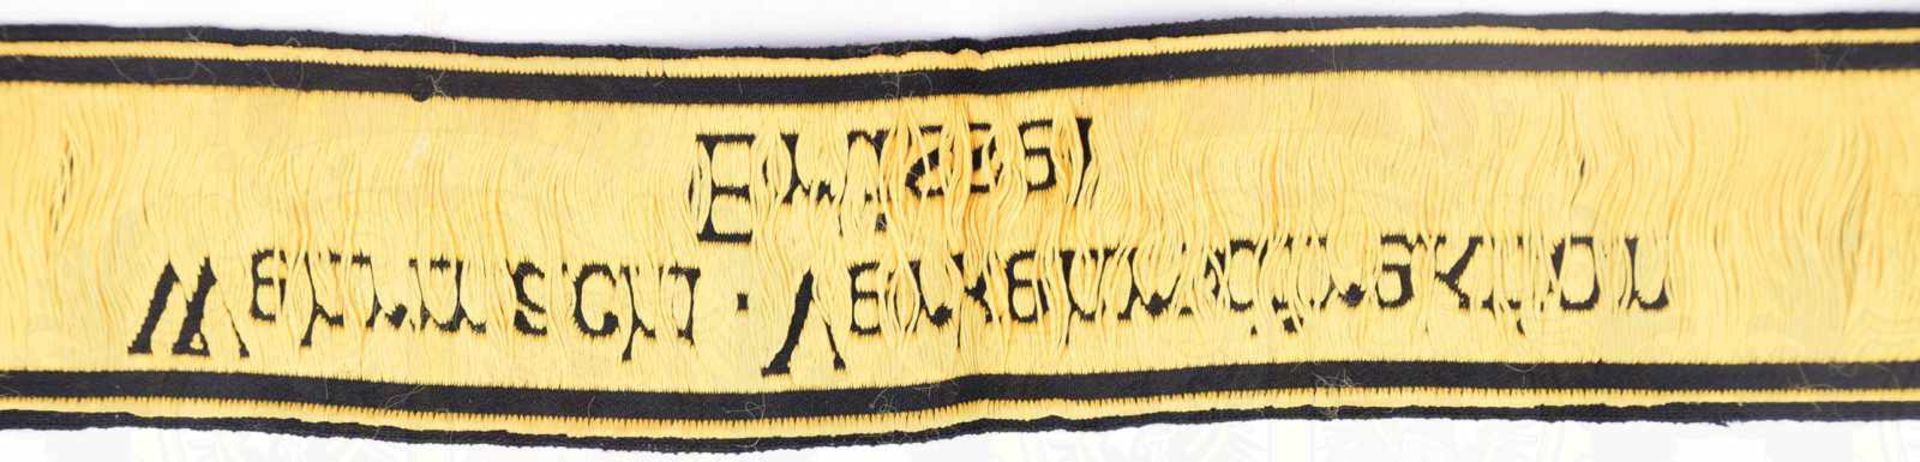 ÄRMELBAND WEHRMACHT-VERKEHRSDIREKTION BRÜSSEL, gewebt, gelb/schwarz, L. 43cm, ungetragen, um 1940 - Bild 3 aus 3